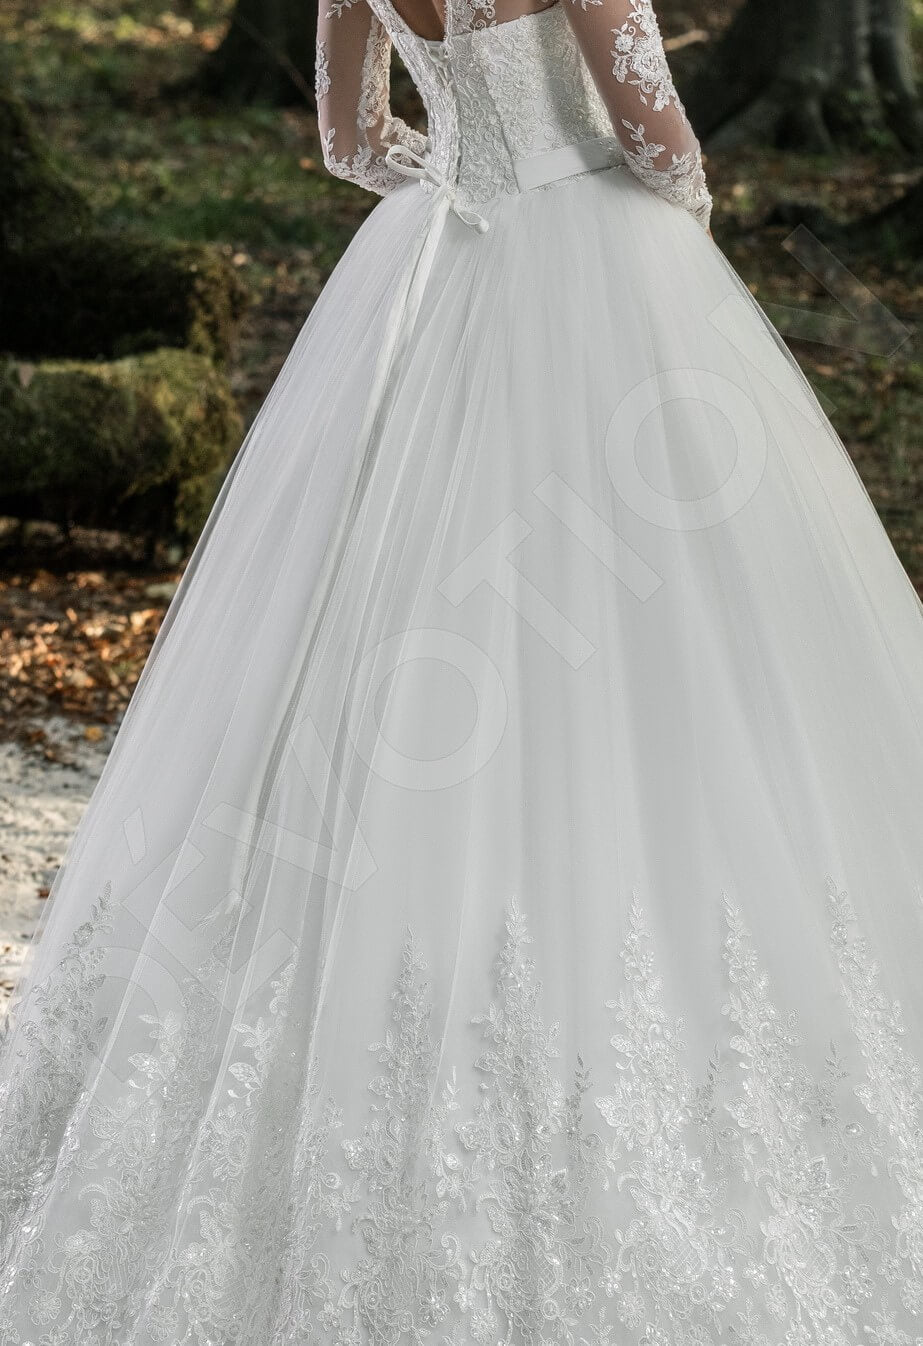 Octavia Open back Princess/Ball Gown Long sleeve Wedding Dress 7